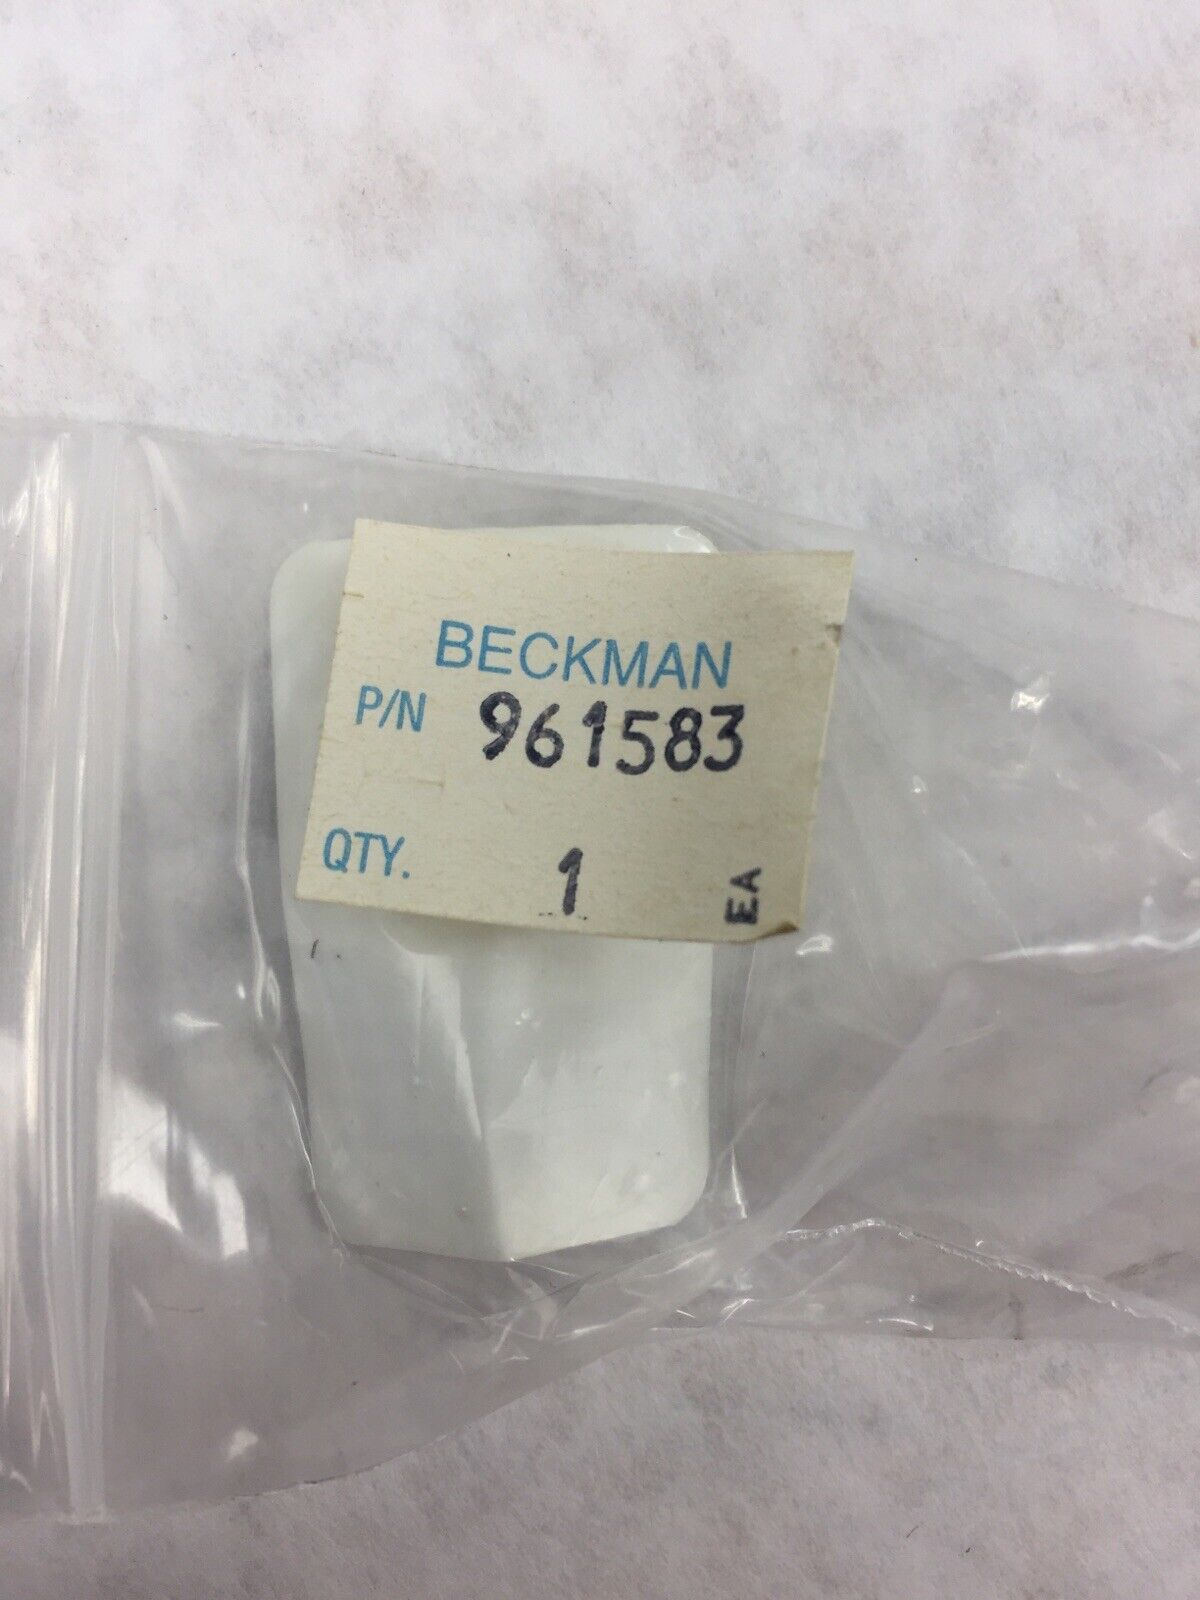 Beckman 961583